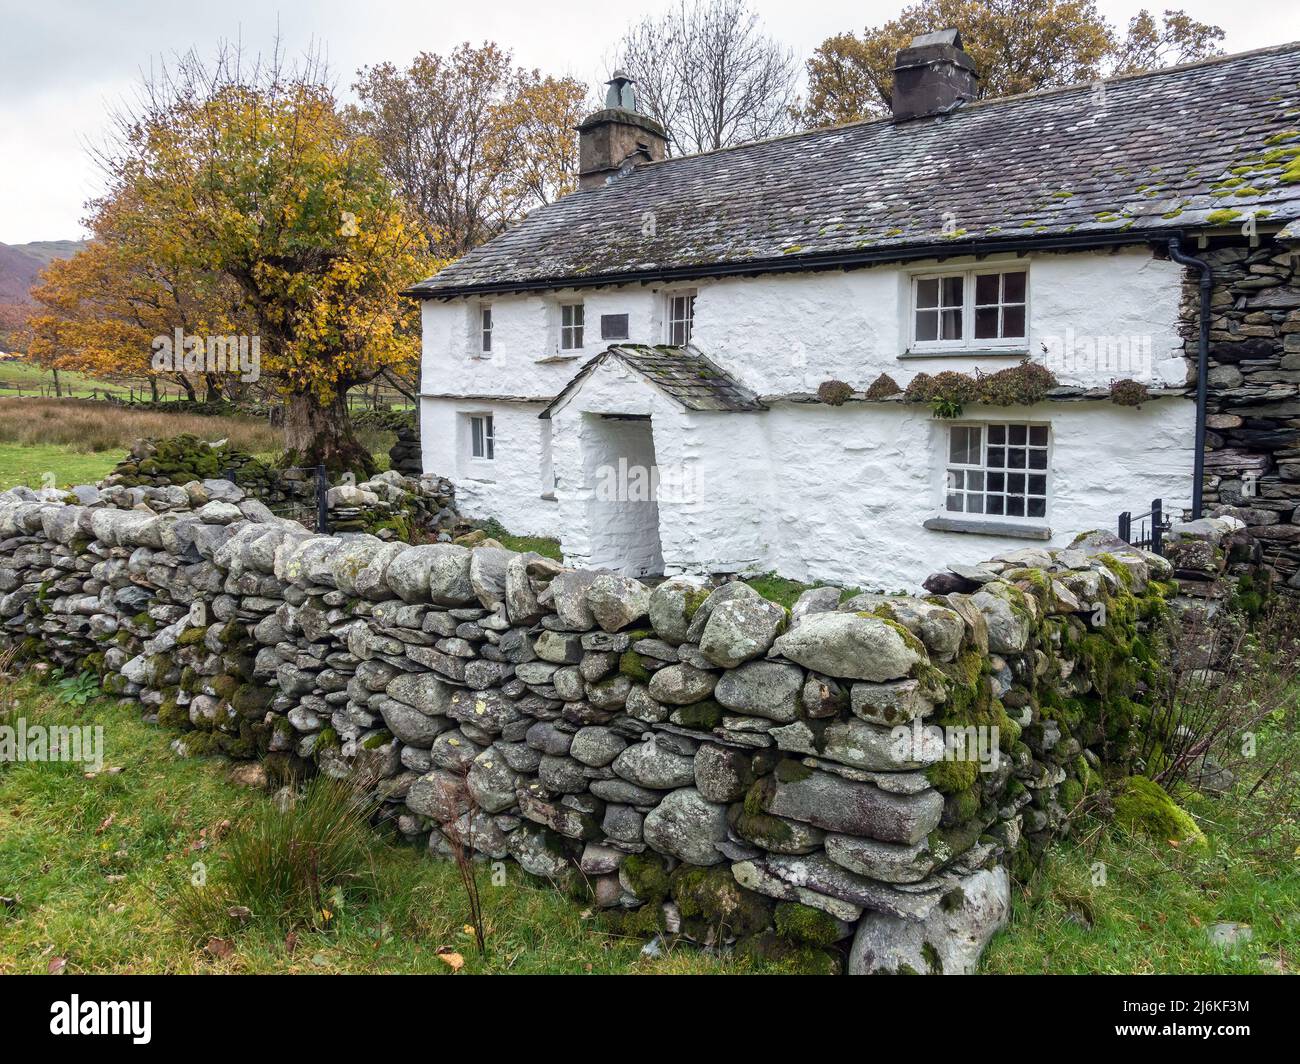 Vieux blanc lavé Lakeland ferme cottage avec toit en ardoise, Bridge End Cottage Farm, Little Langdale, Cumbria, Angleterre, Royaume-Uni Banque D'Images